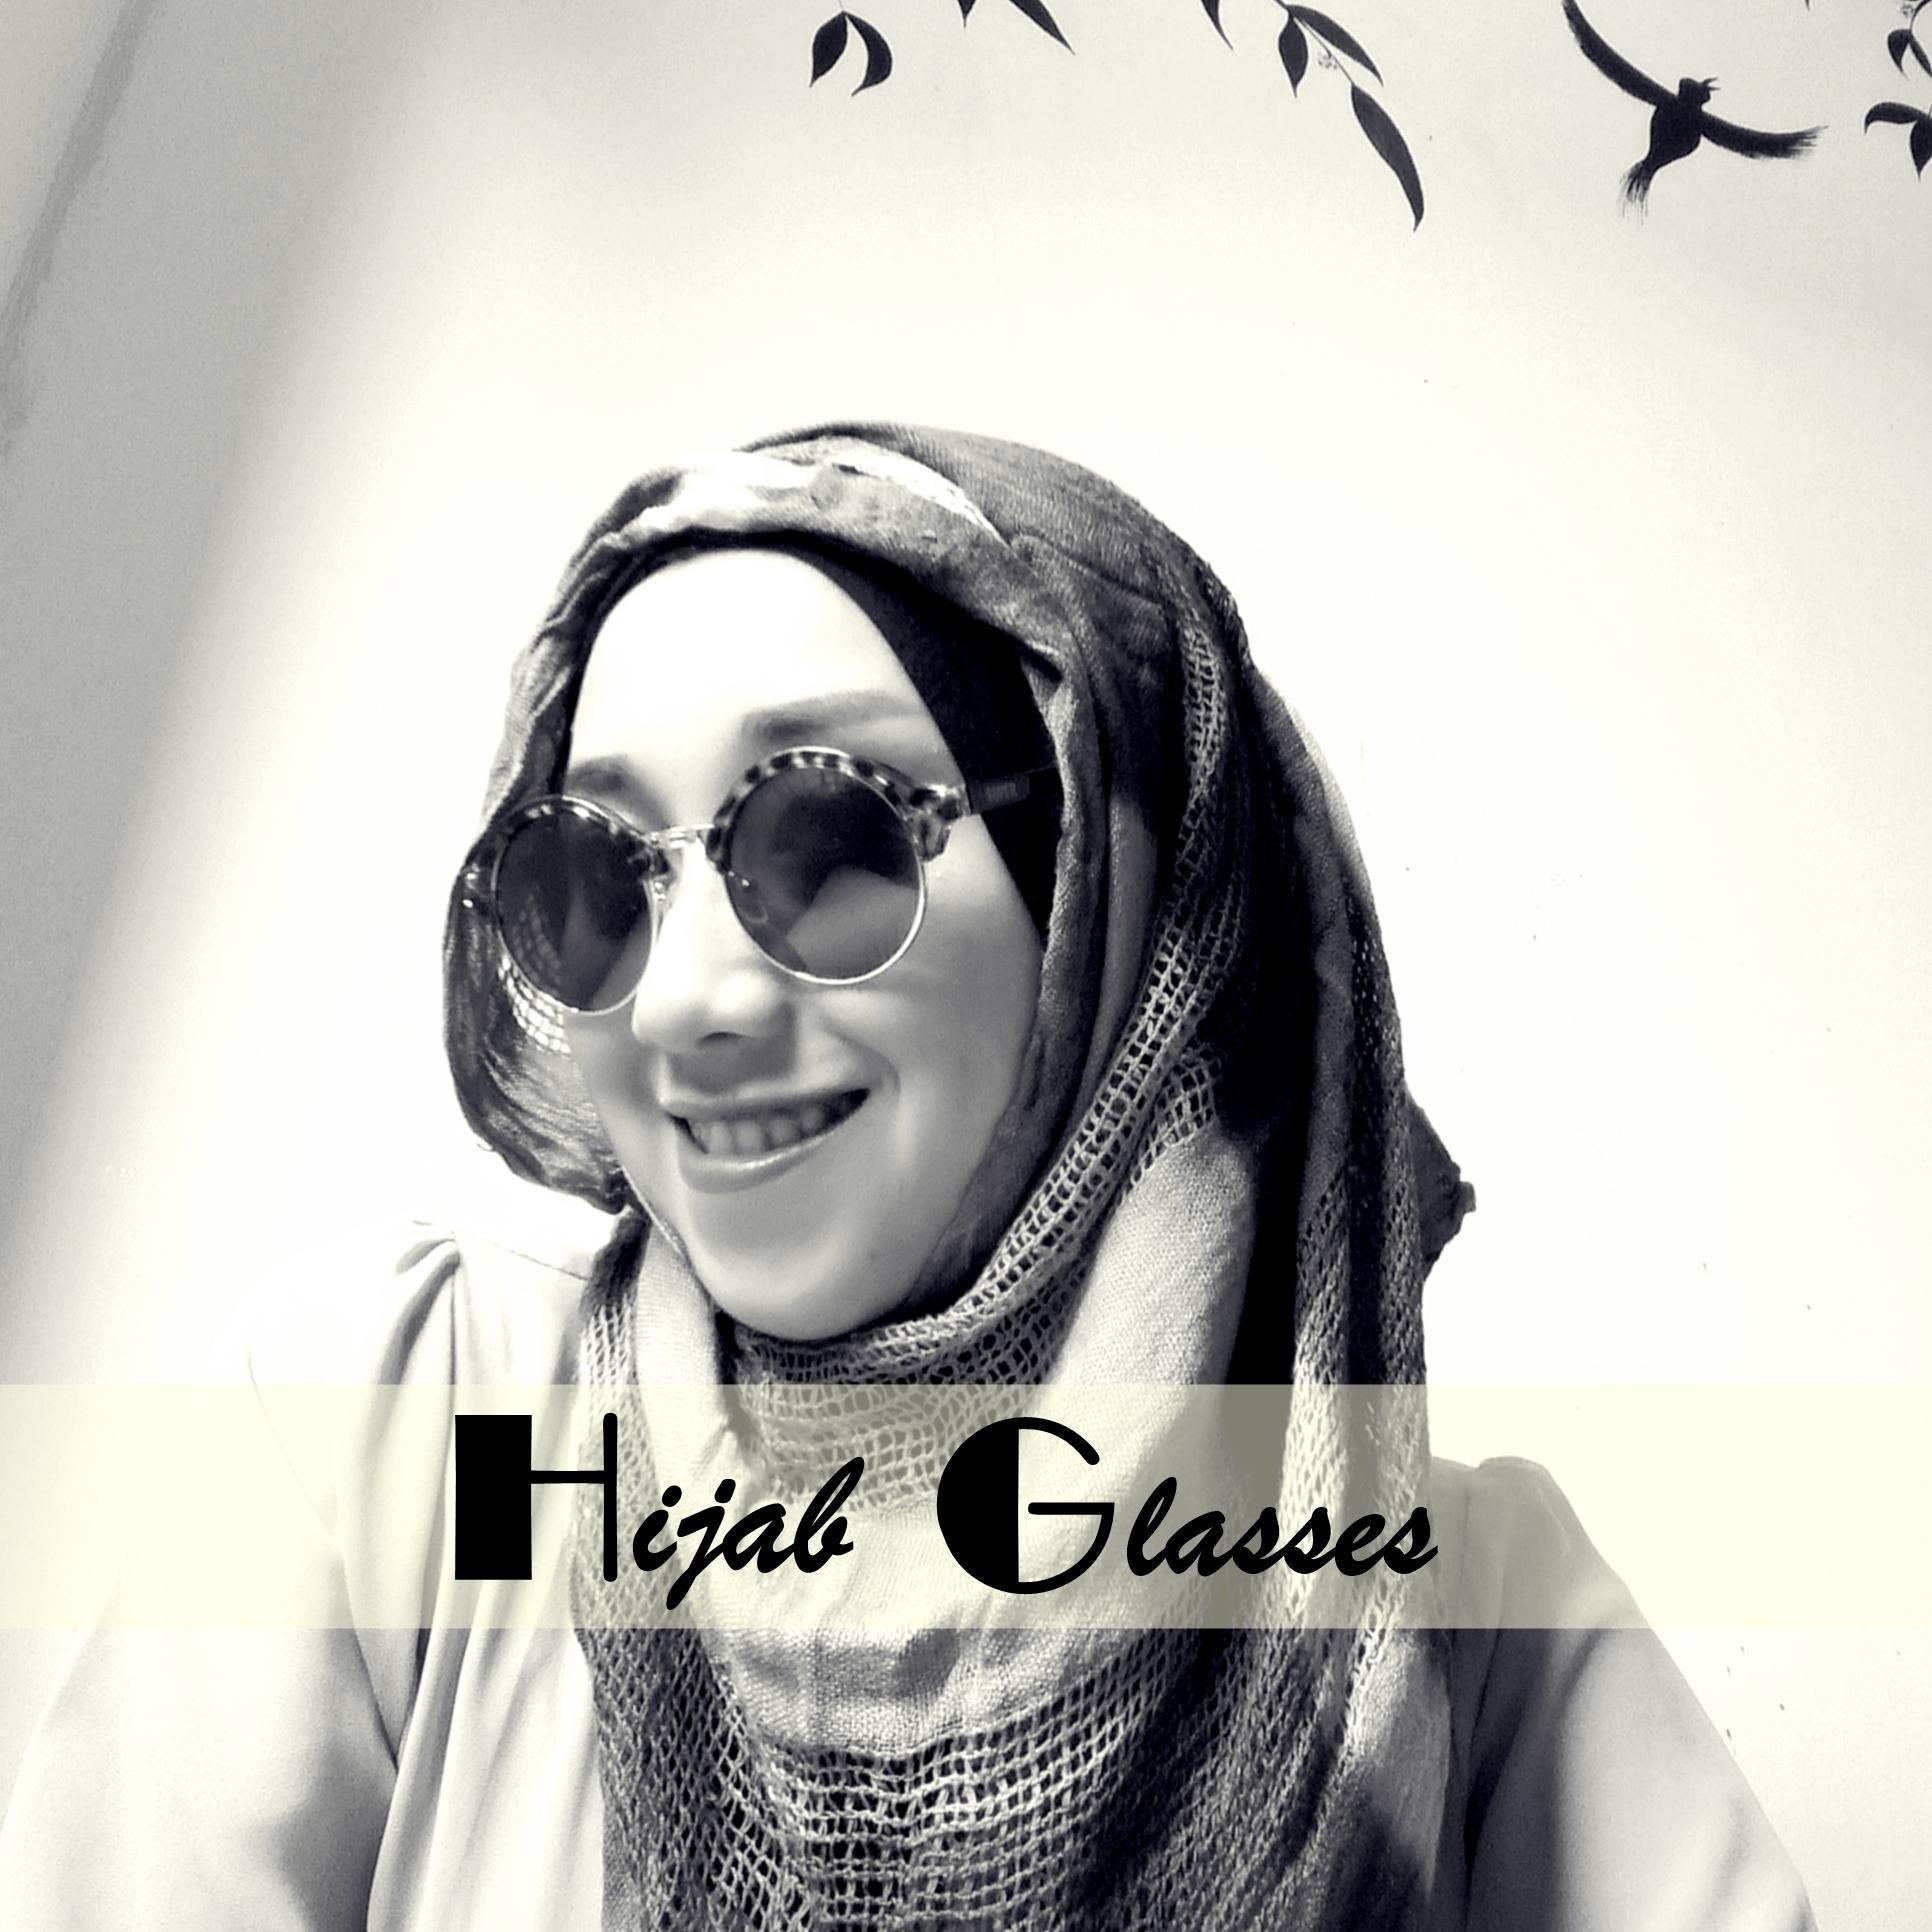  Kacamata Hijab  on Twitter Kacamata  unik 75K let cekidot 